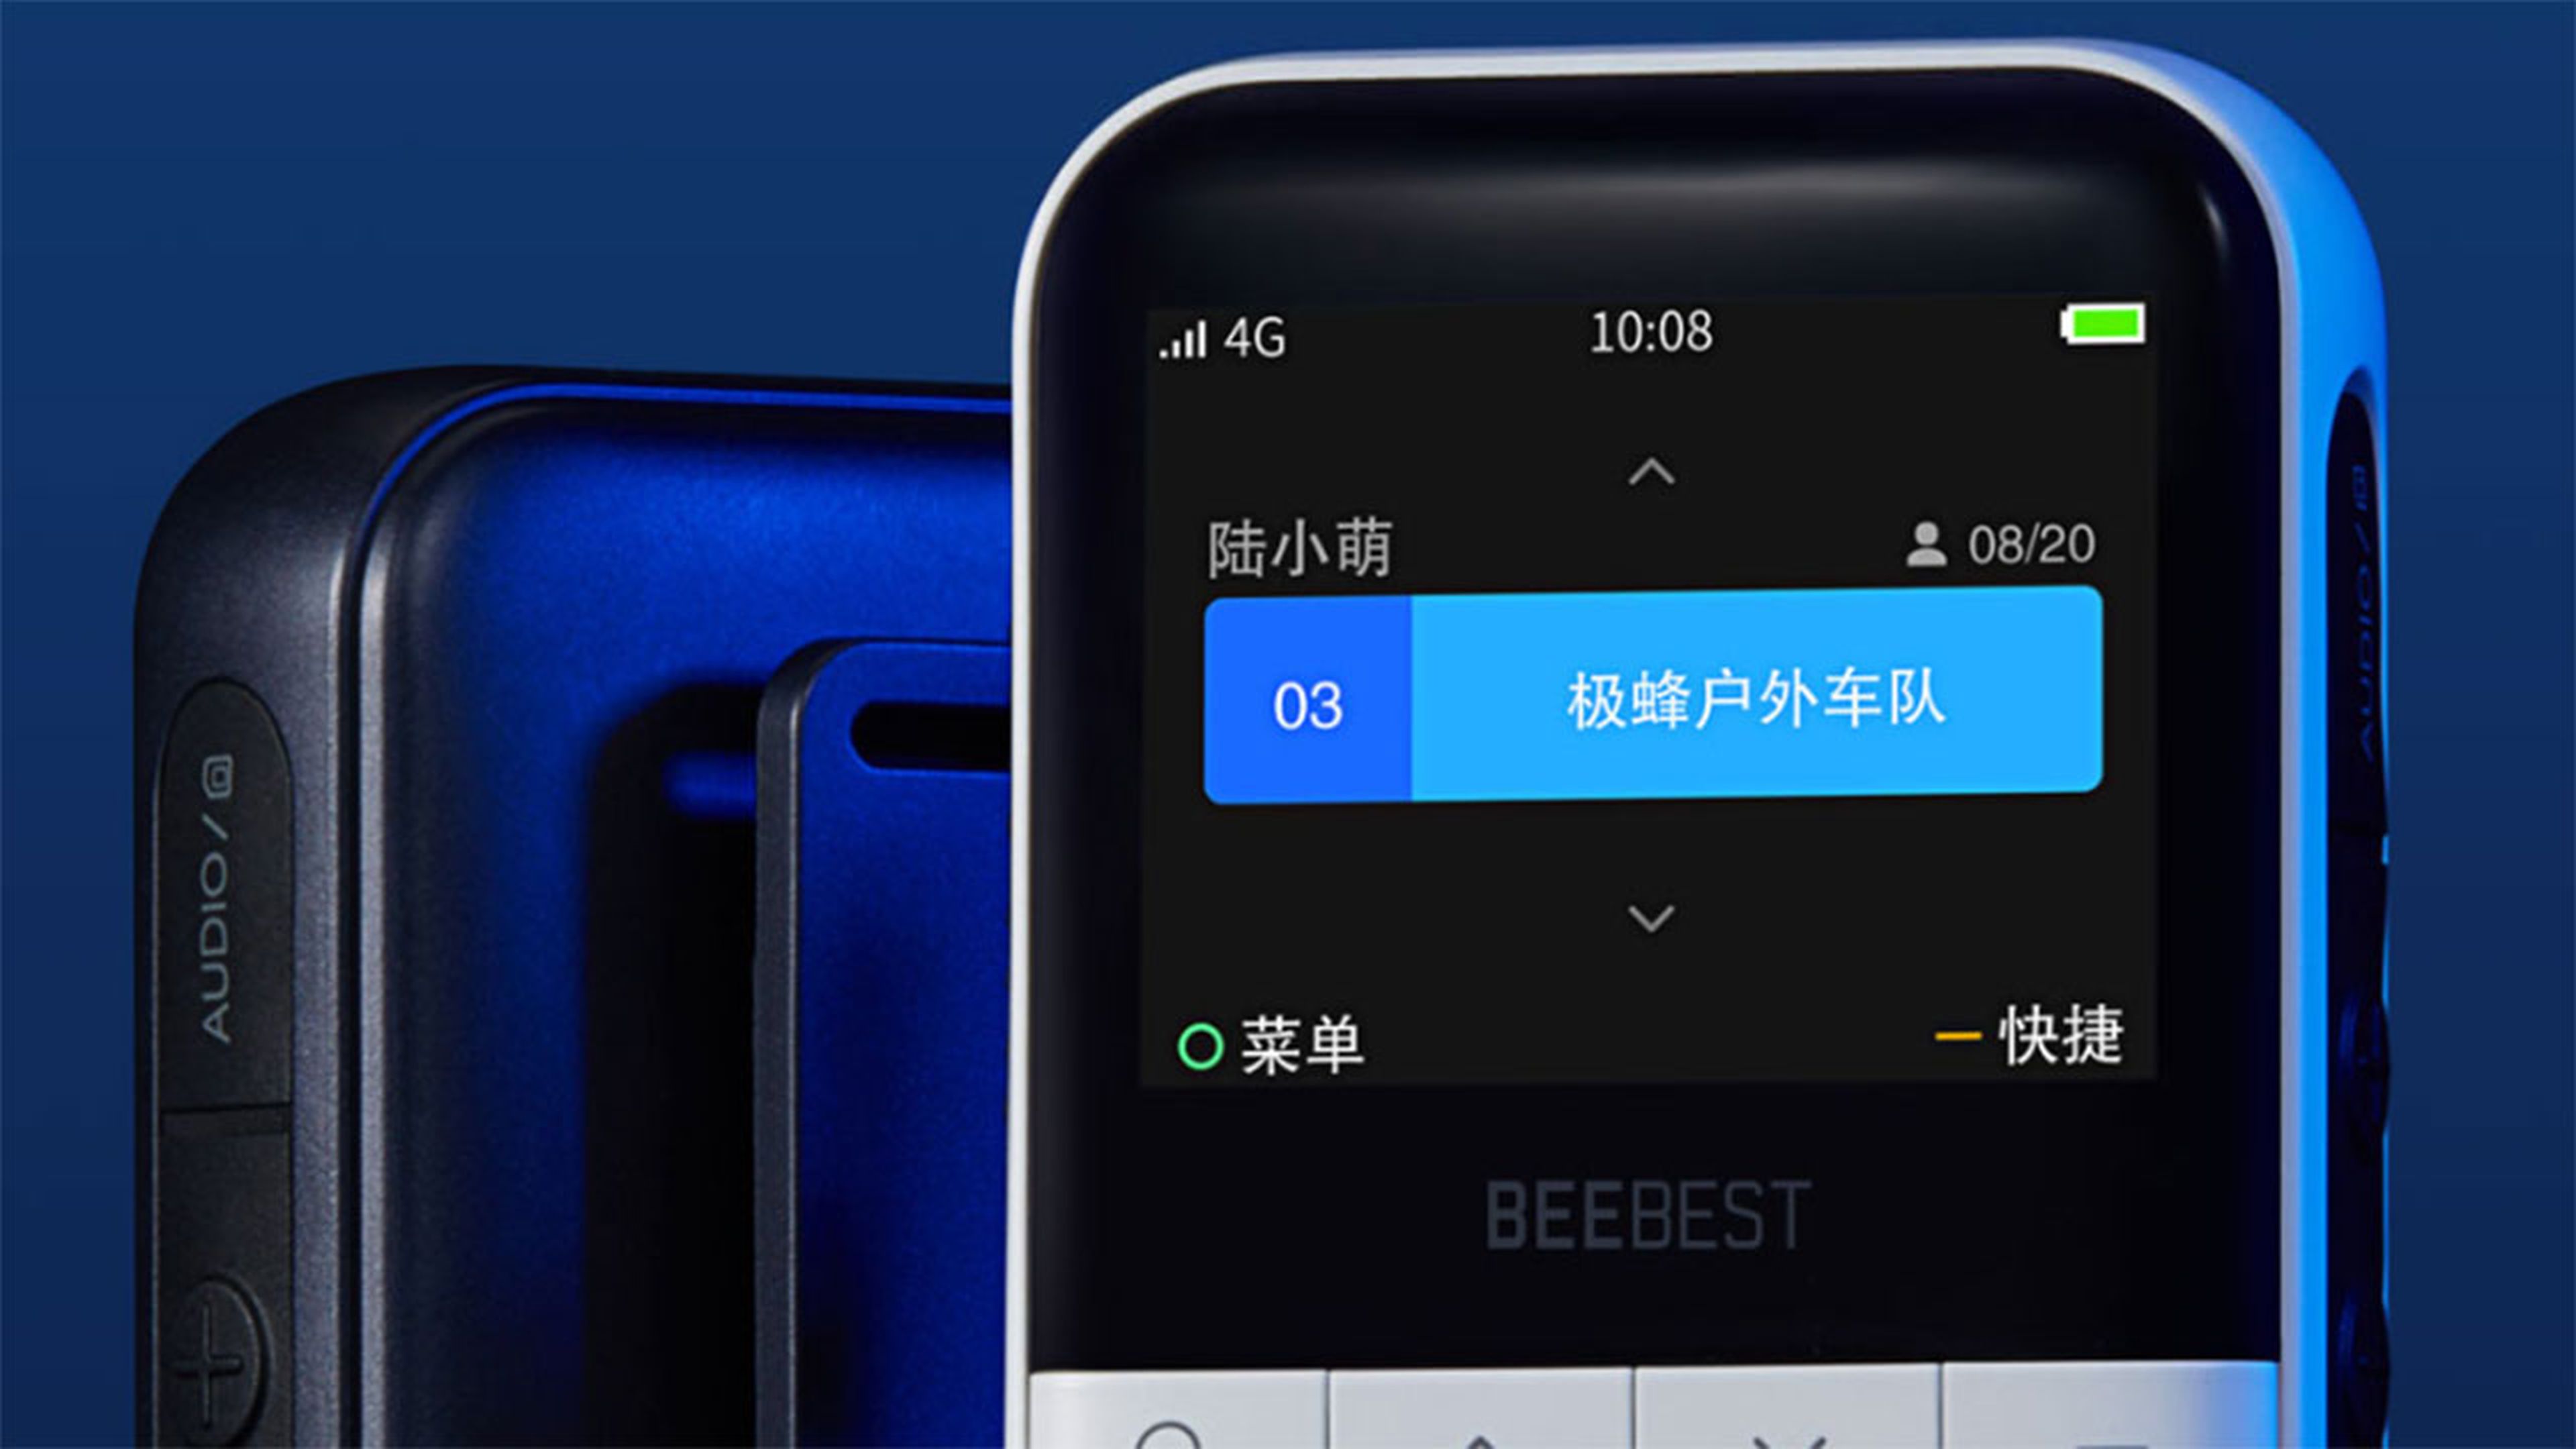 BeeBest Walkie-Talkie de Xiaomi